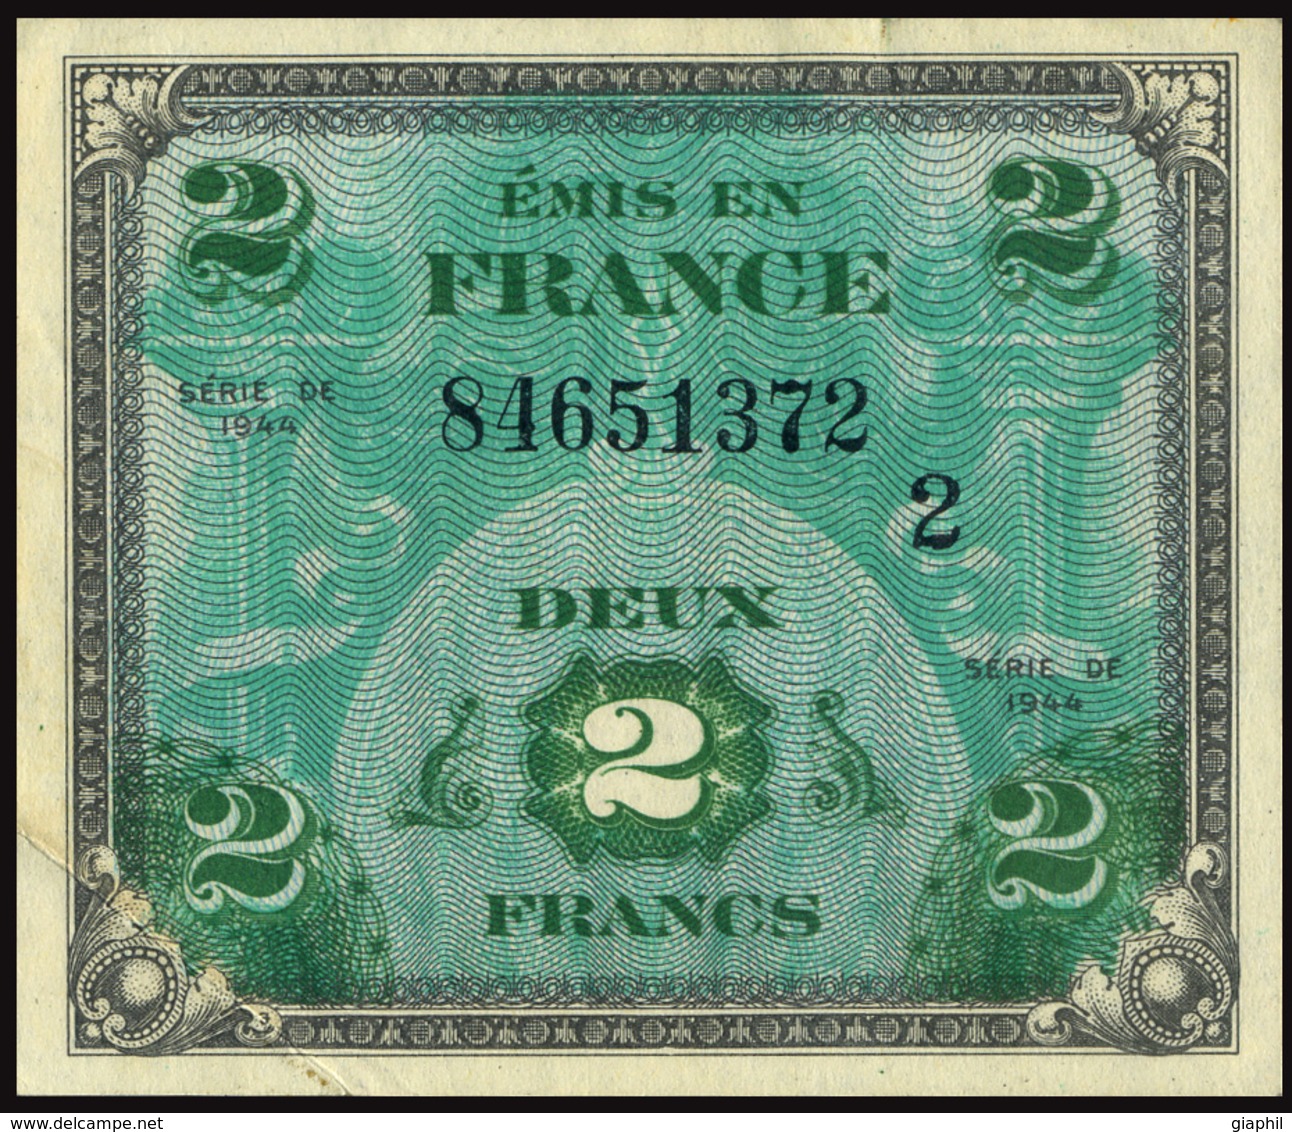 FRANCE 1944 DRAPEAU/FRANCE - 2 FRANCS OFFER!!! - 1944 Flag/France